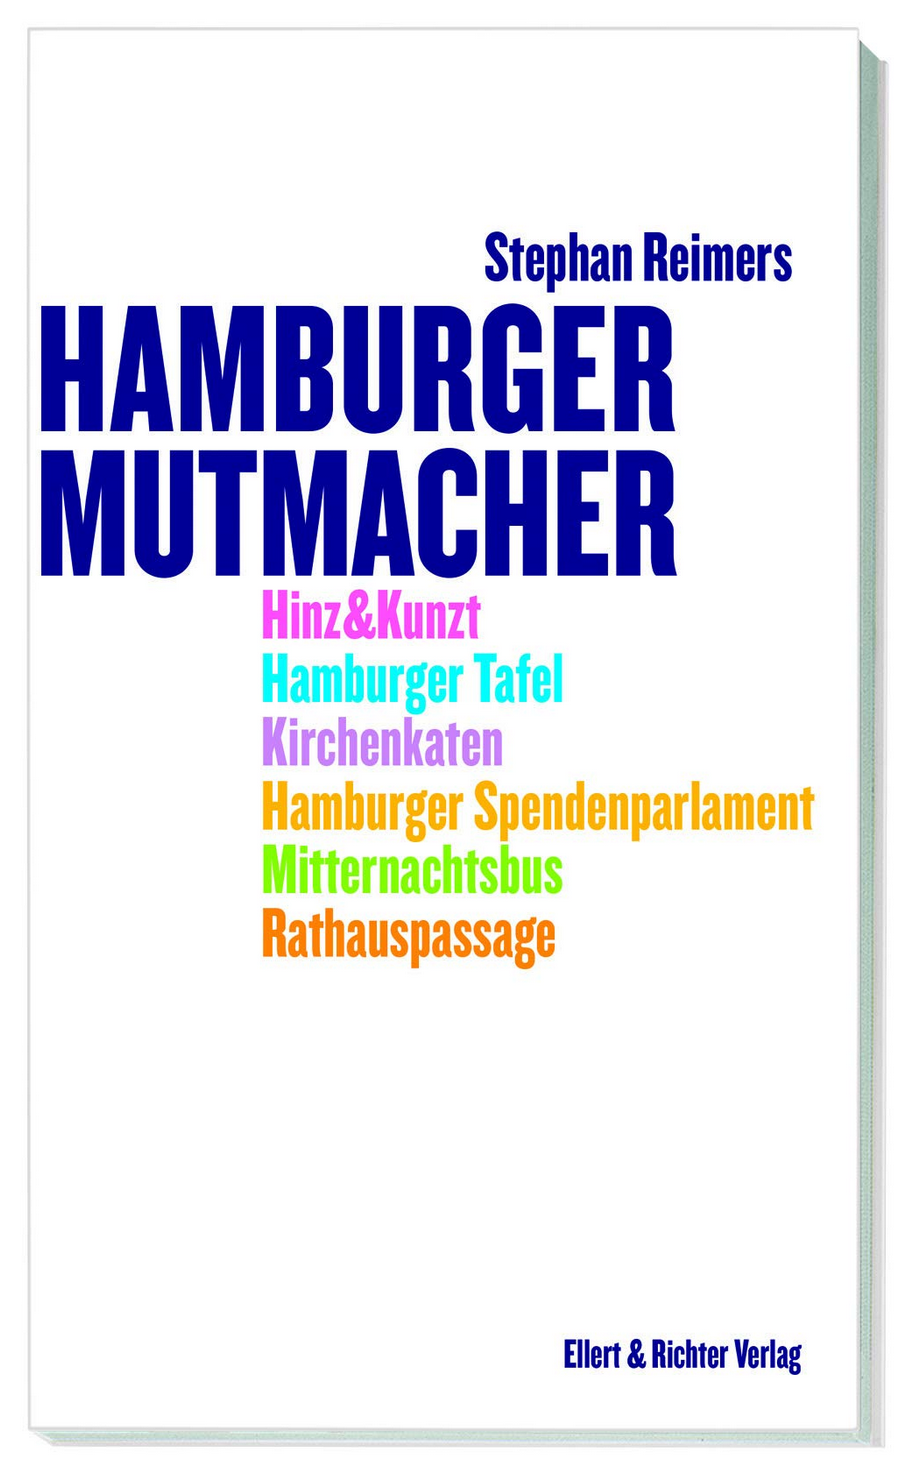 2019, hamburger mutmacher, buch, stephan reimers, reimers, ellert&richter